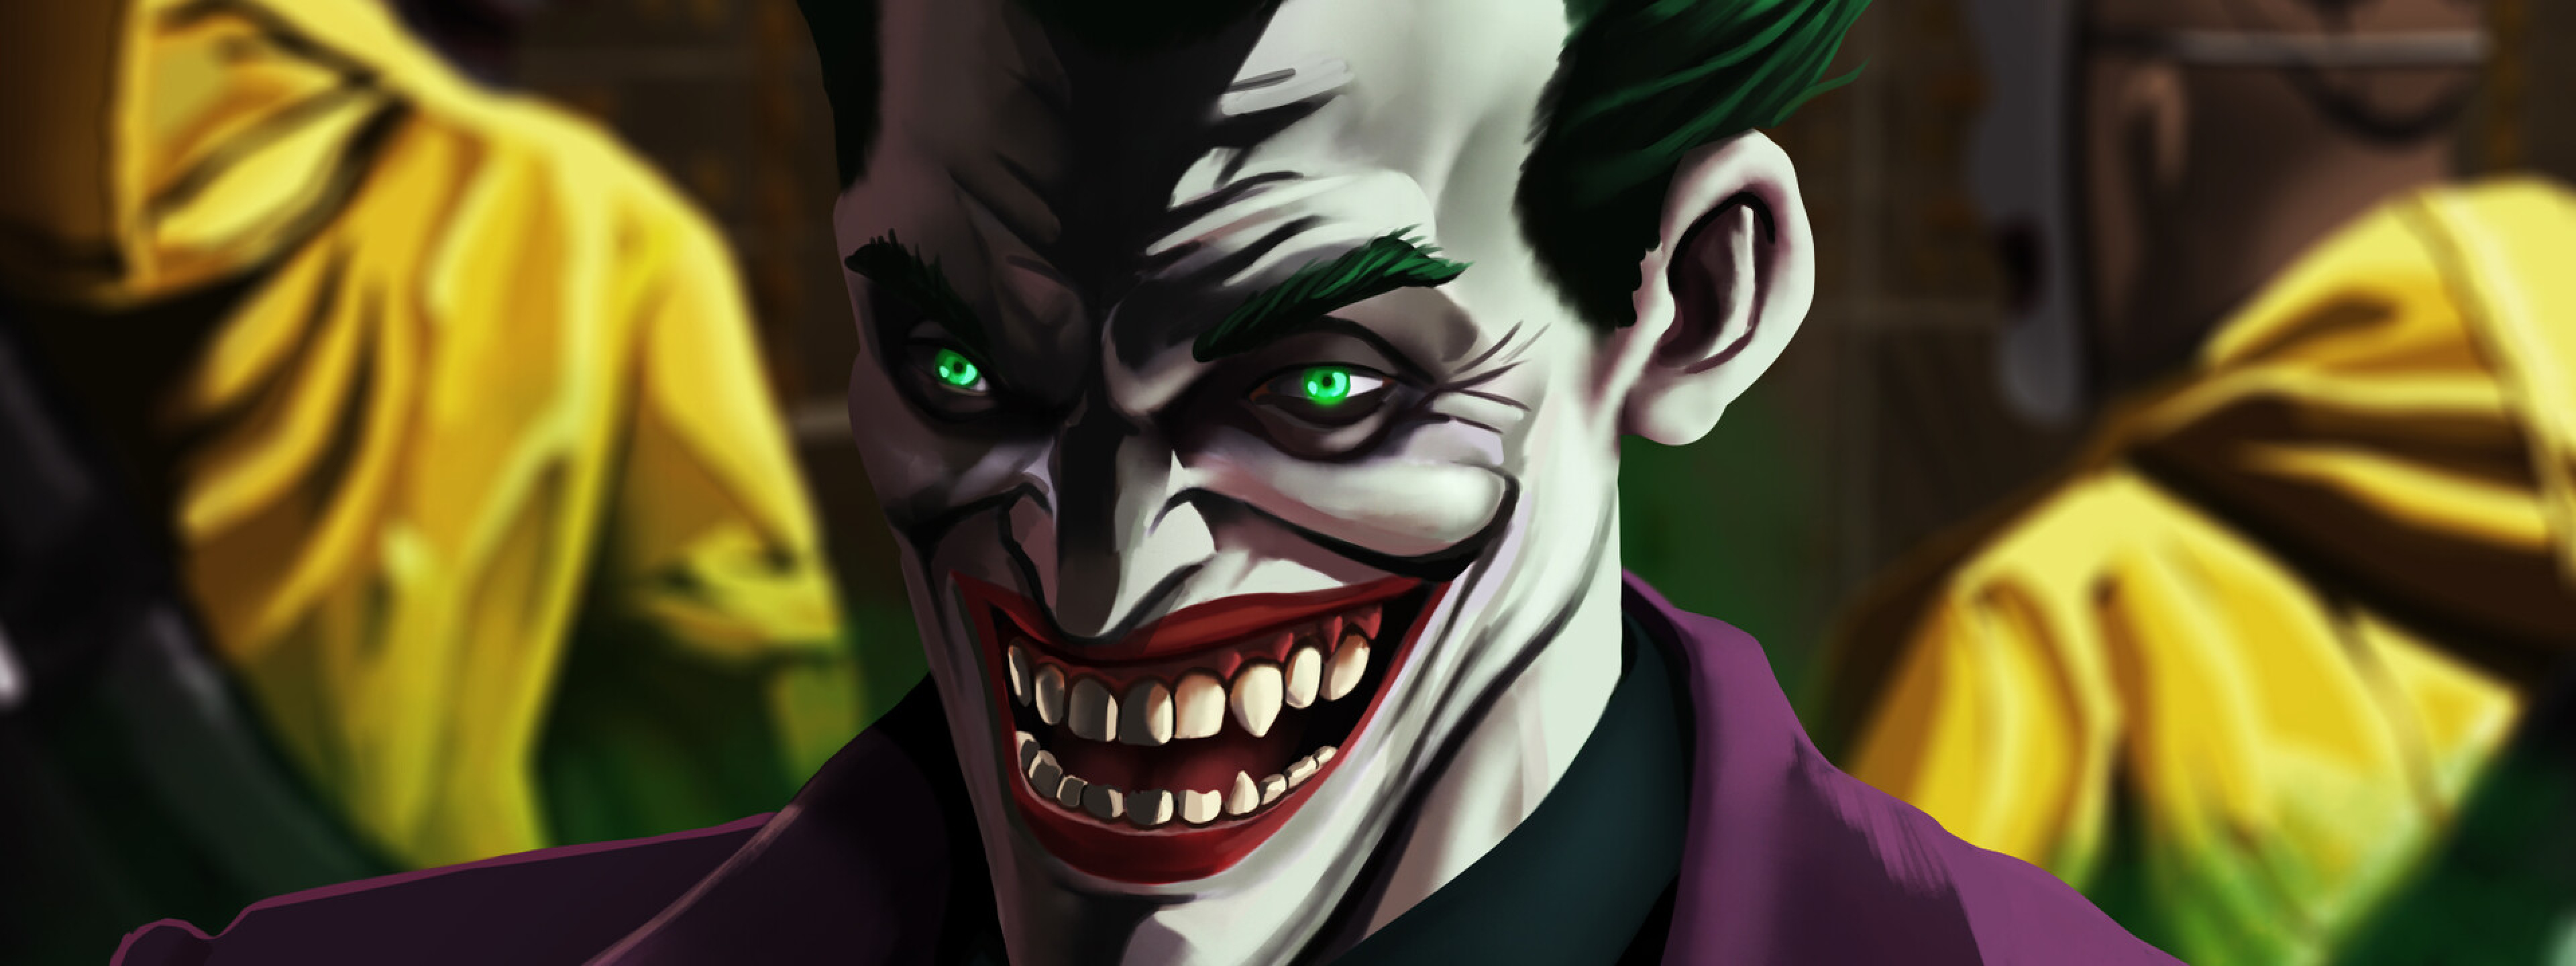 3840x1440 Resolution An Evil Joker Laugh 3840x1440 Resolution Wallpaper ...